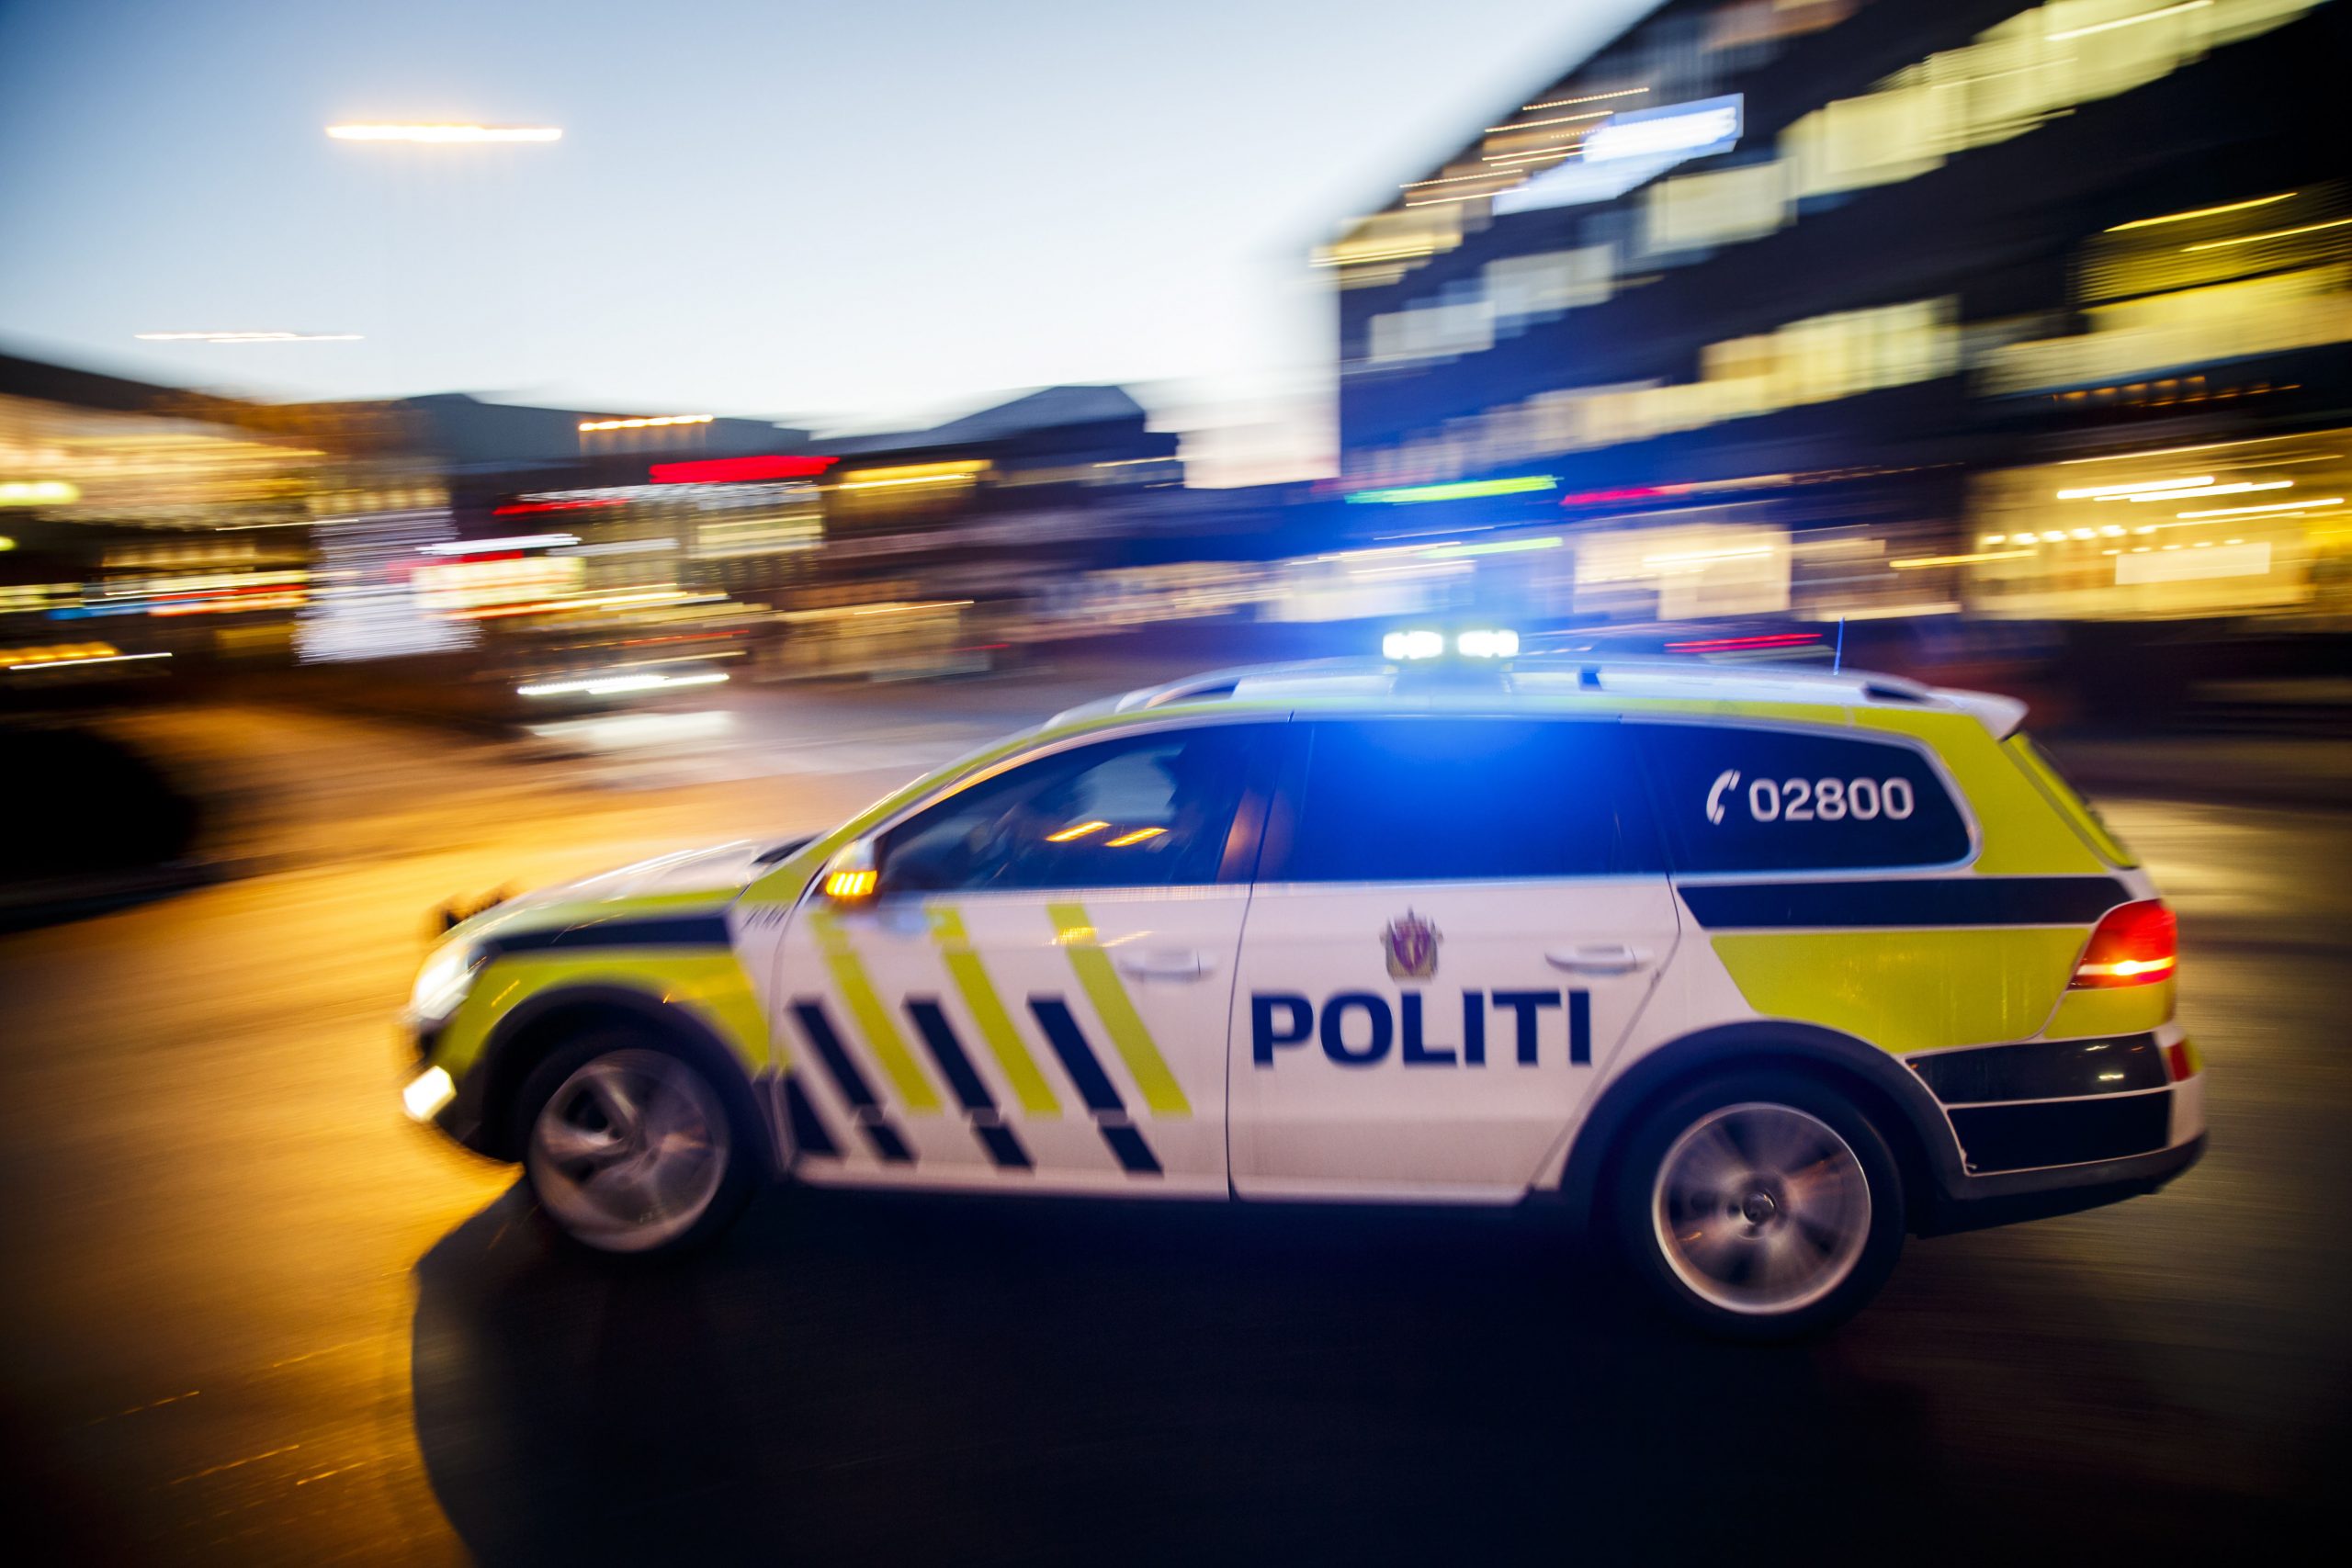 La police demande des conseils aux personnes susceptibles d'avoir été témoins de violence à Stavanger - 3